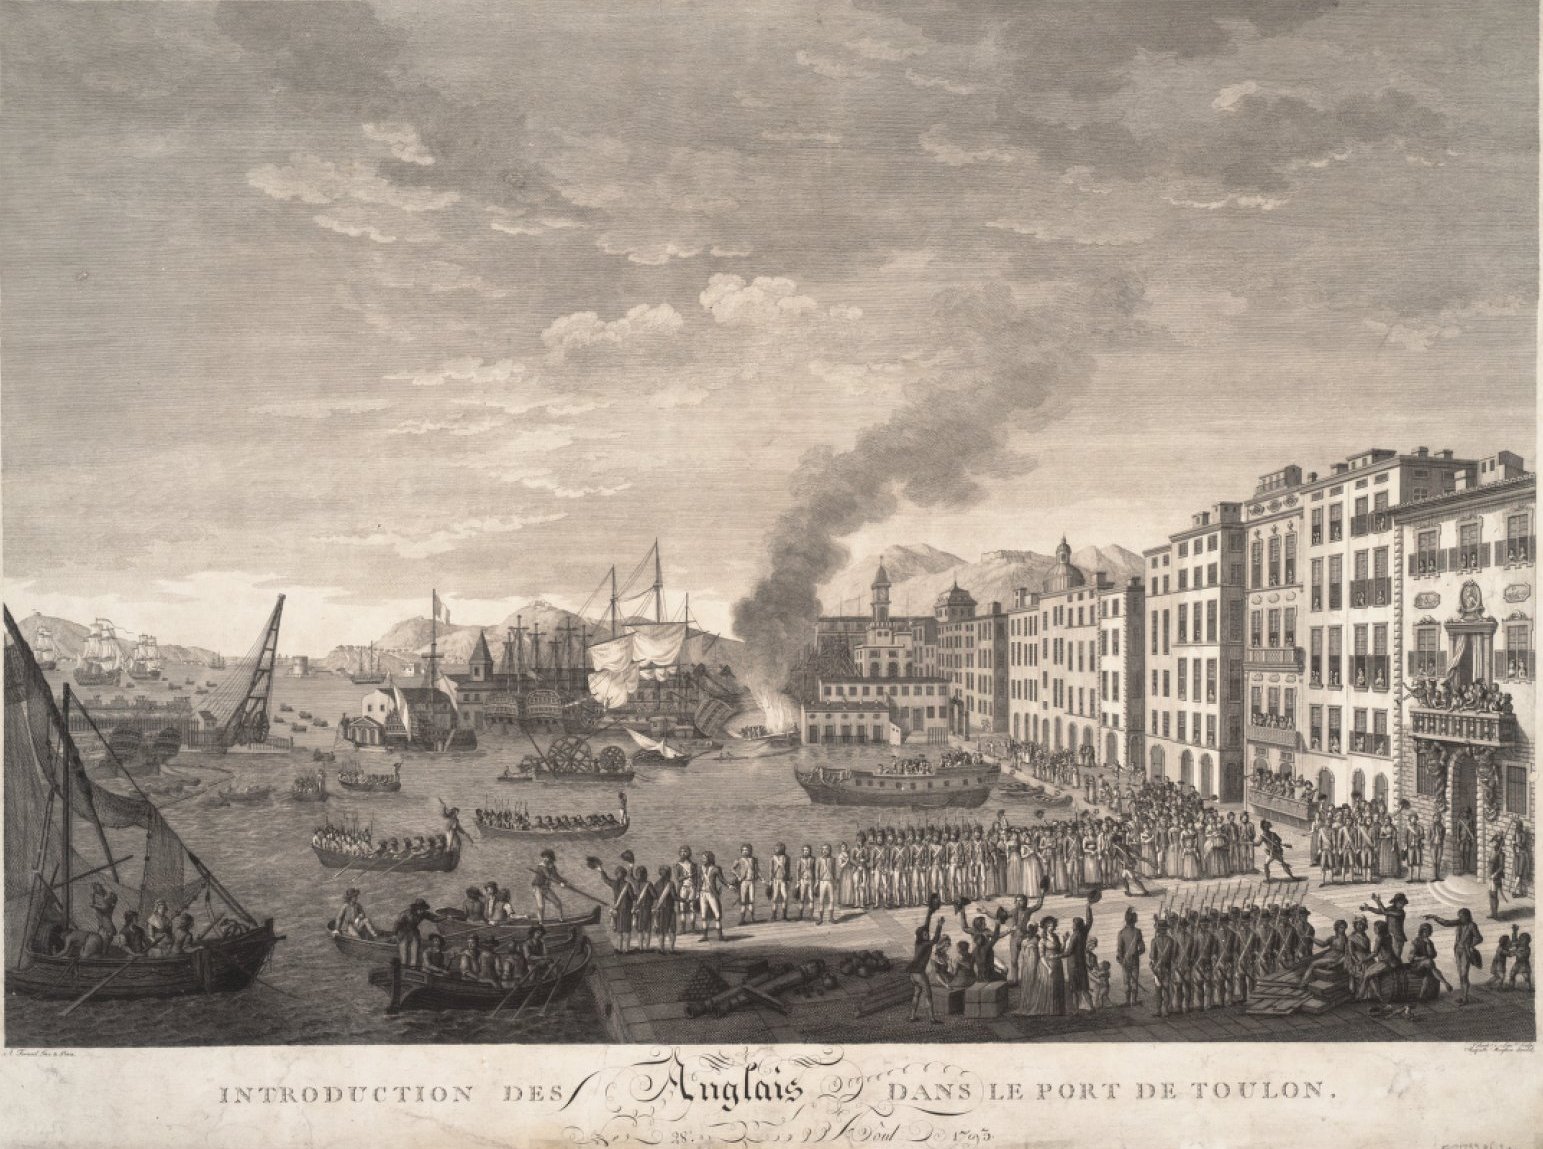 19 OCTOBRE 1793 : BONAPARTE, AU SIÈGE DE TOULON, EST PROMU CHEF DE BATAILLON